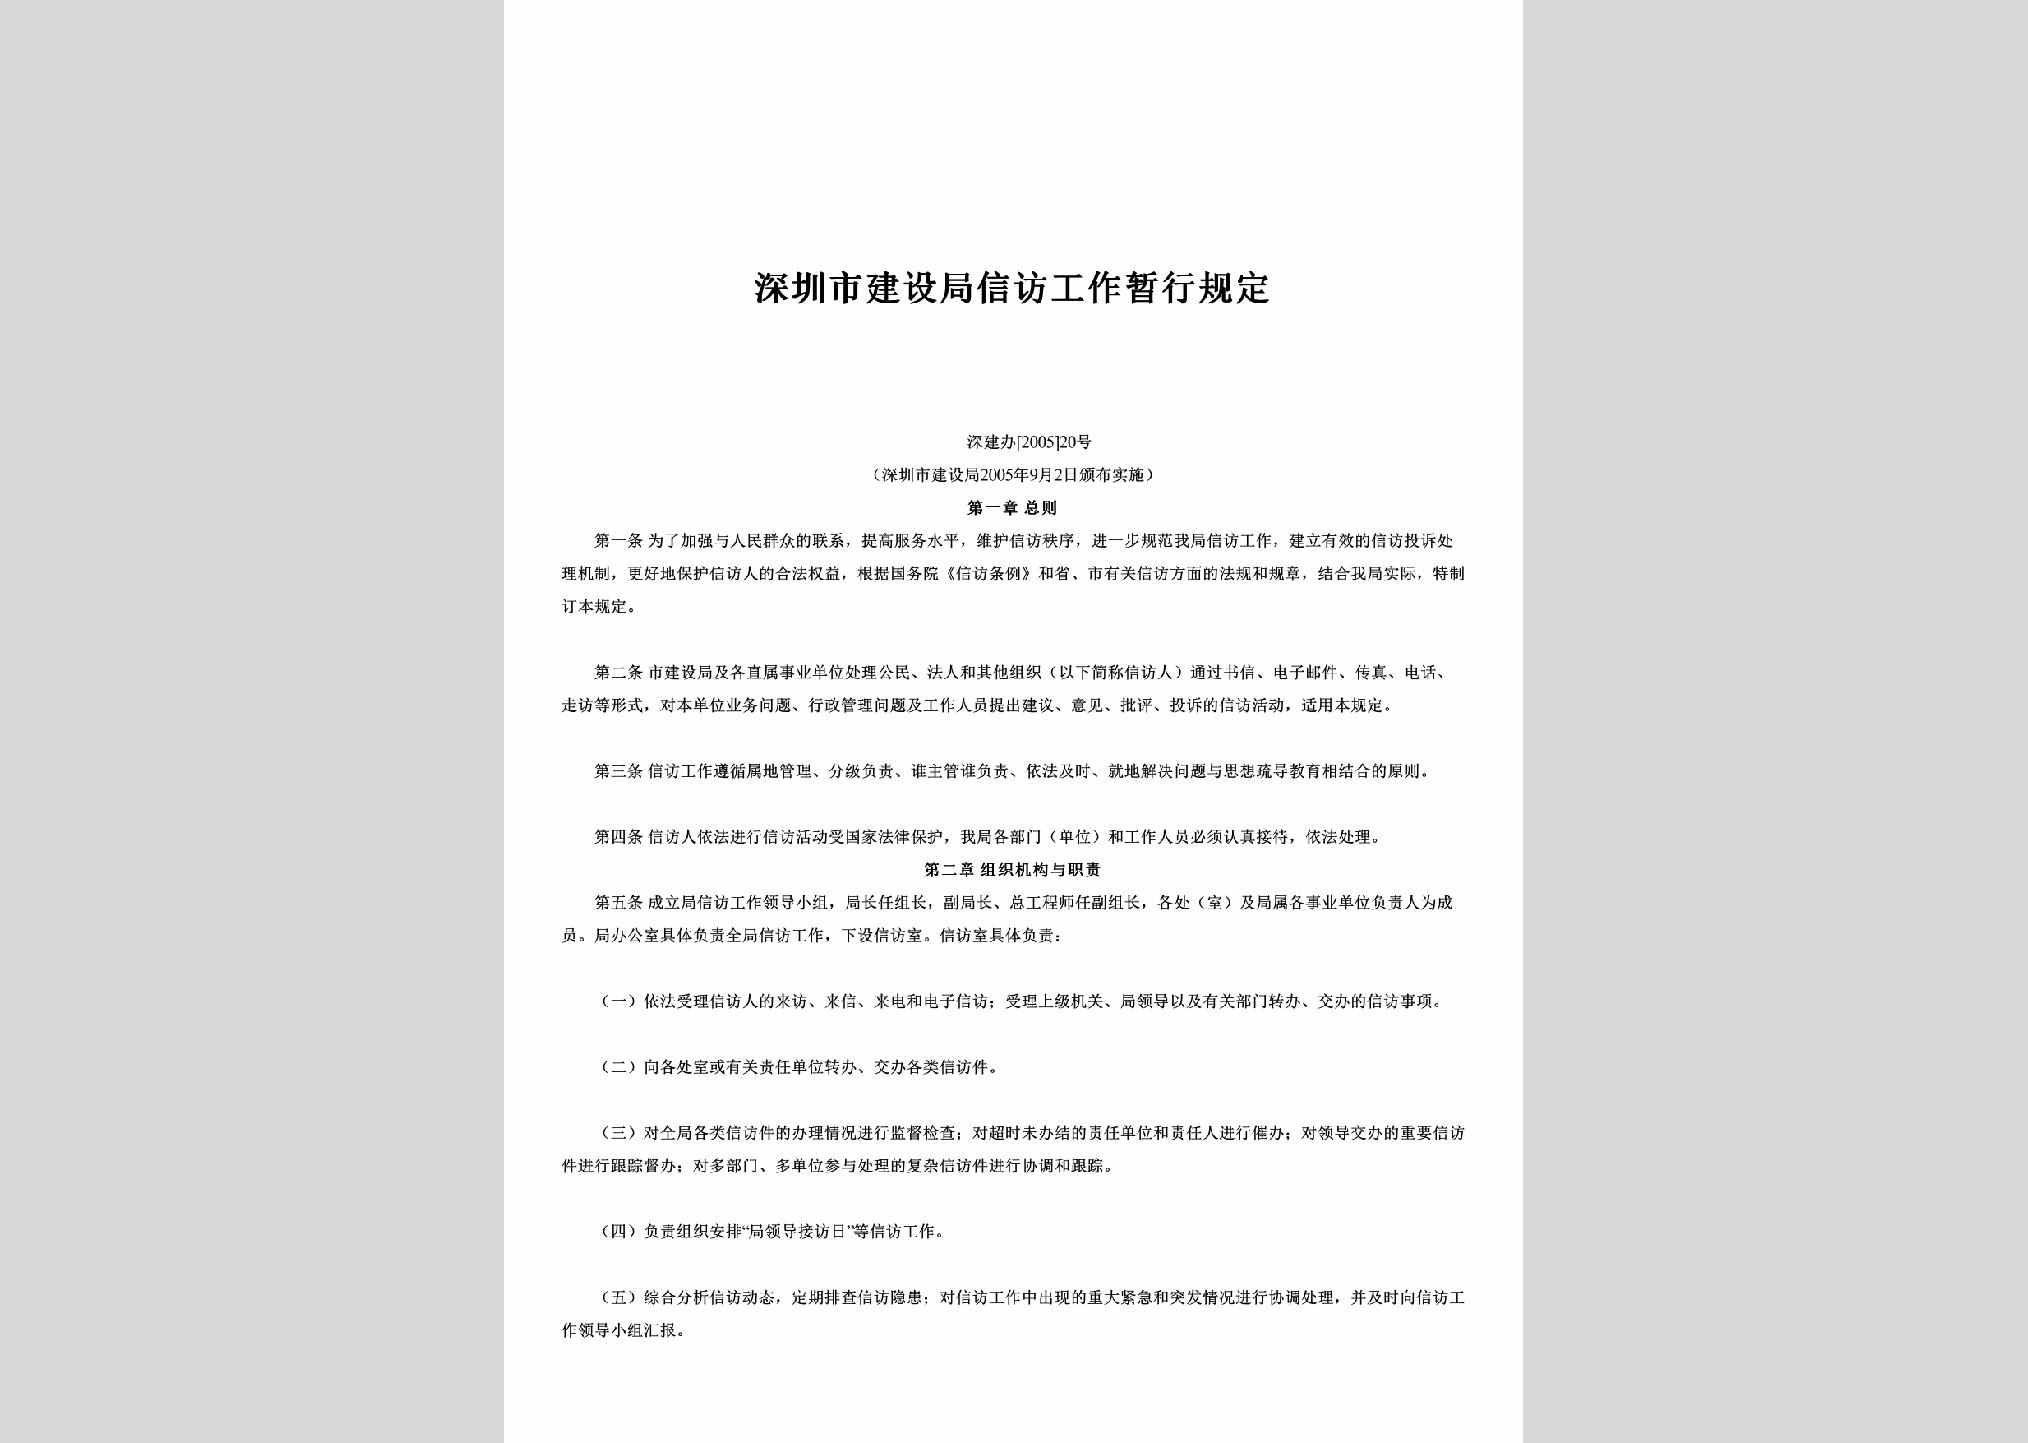 深建办[2005]20号：深圳市建设局信访工作暂行规定